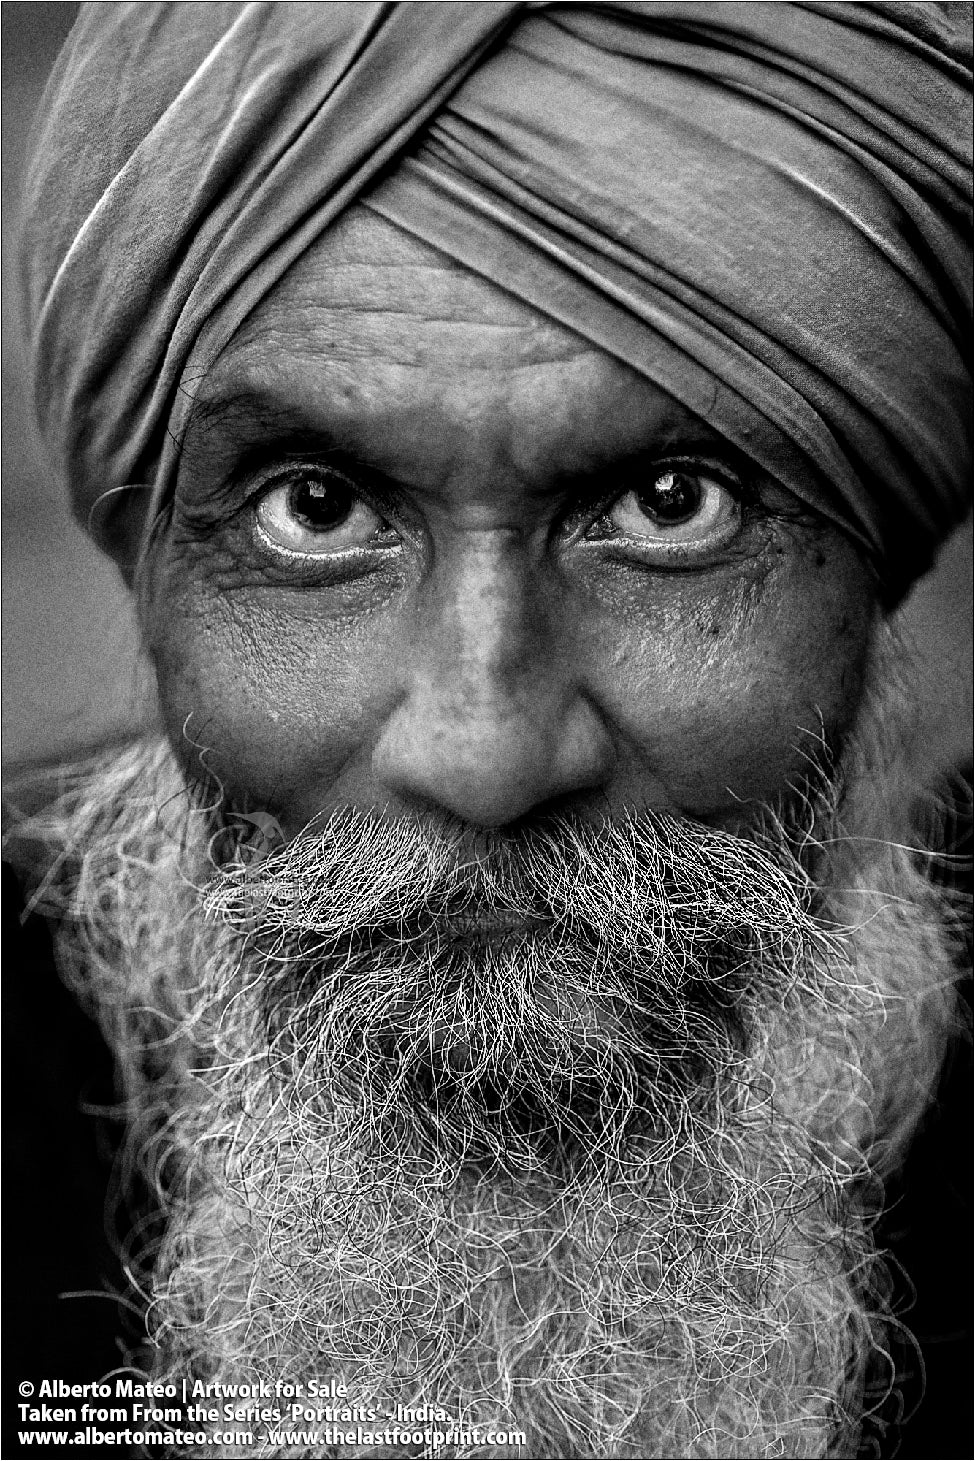 Portrait of Sikh from Amritsar, Bara Bazar, Kolkata, India.